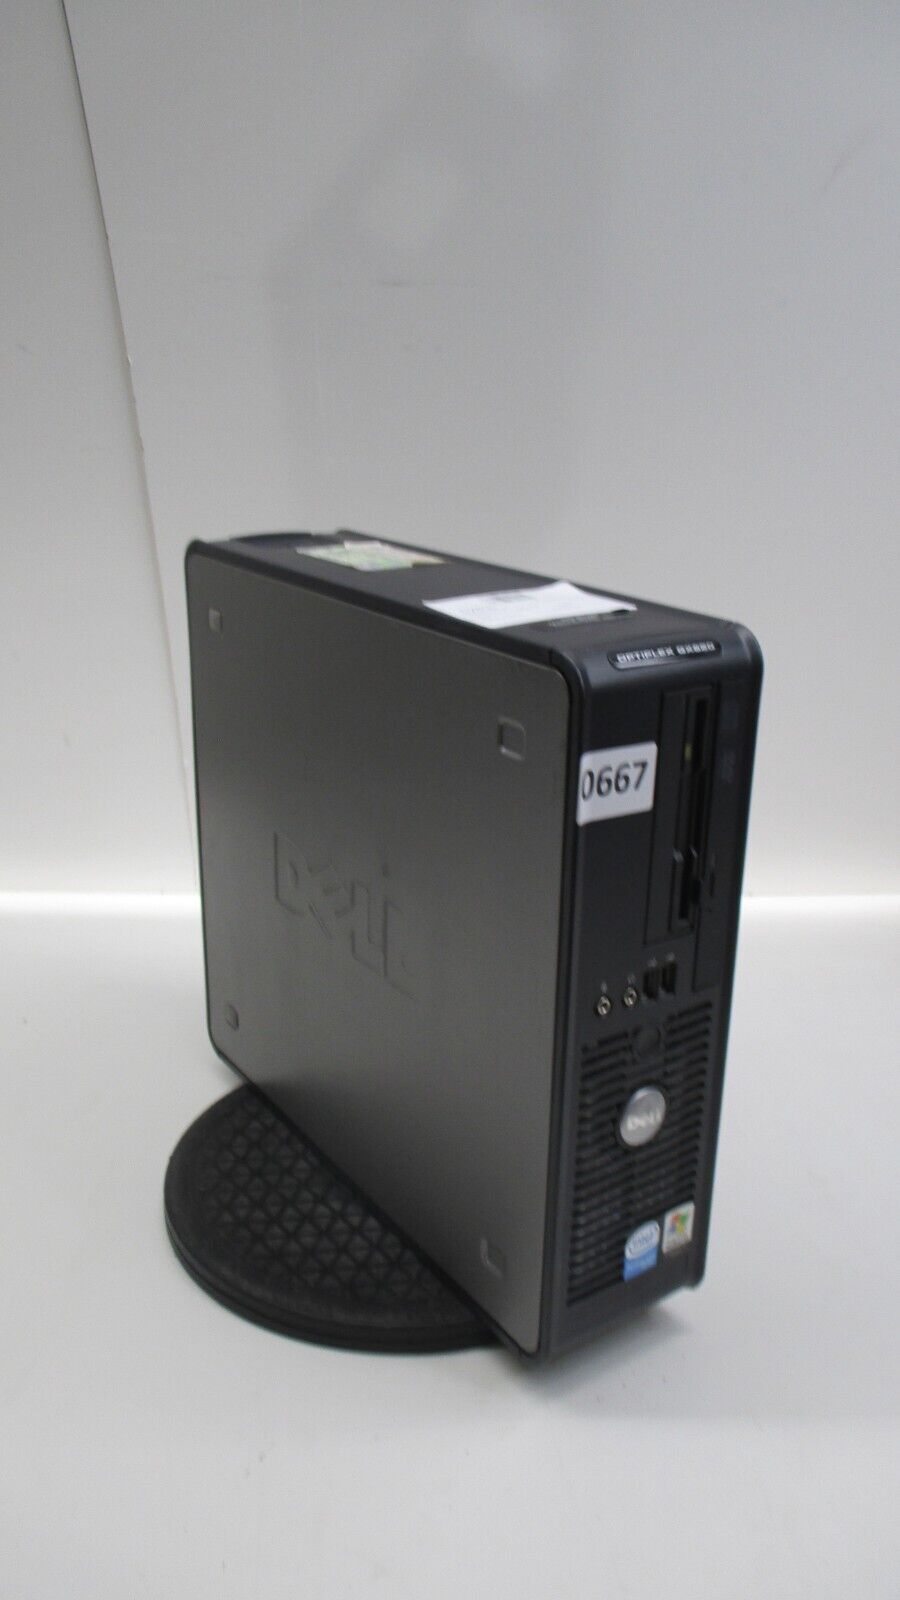 Dell OptiPlex GX620 Desktop Computer Intel Pentium 4 3GB Ram 500GB HD Windows XP